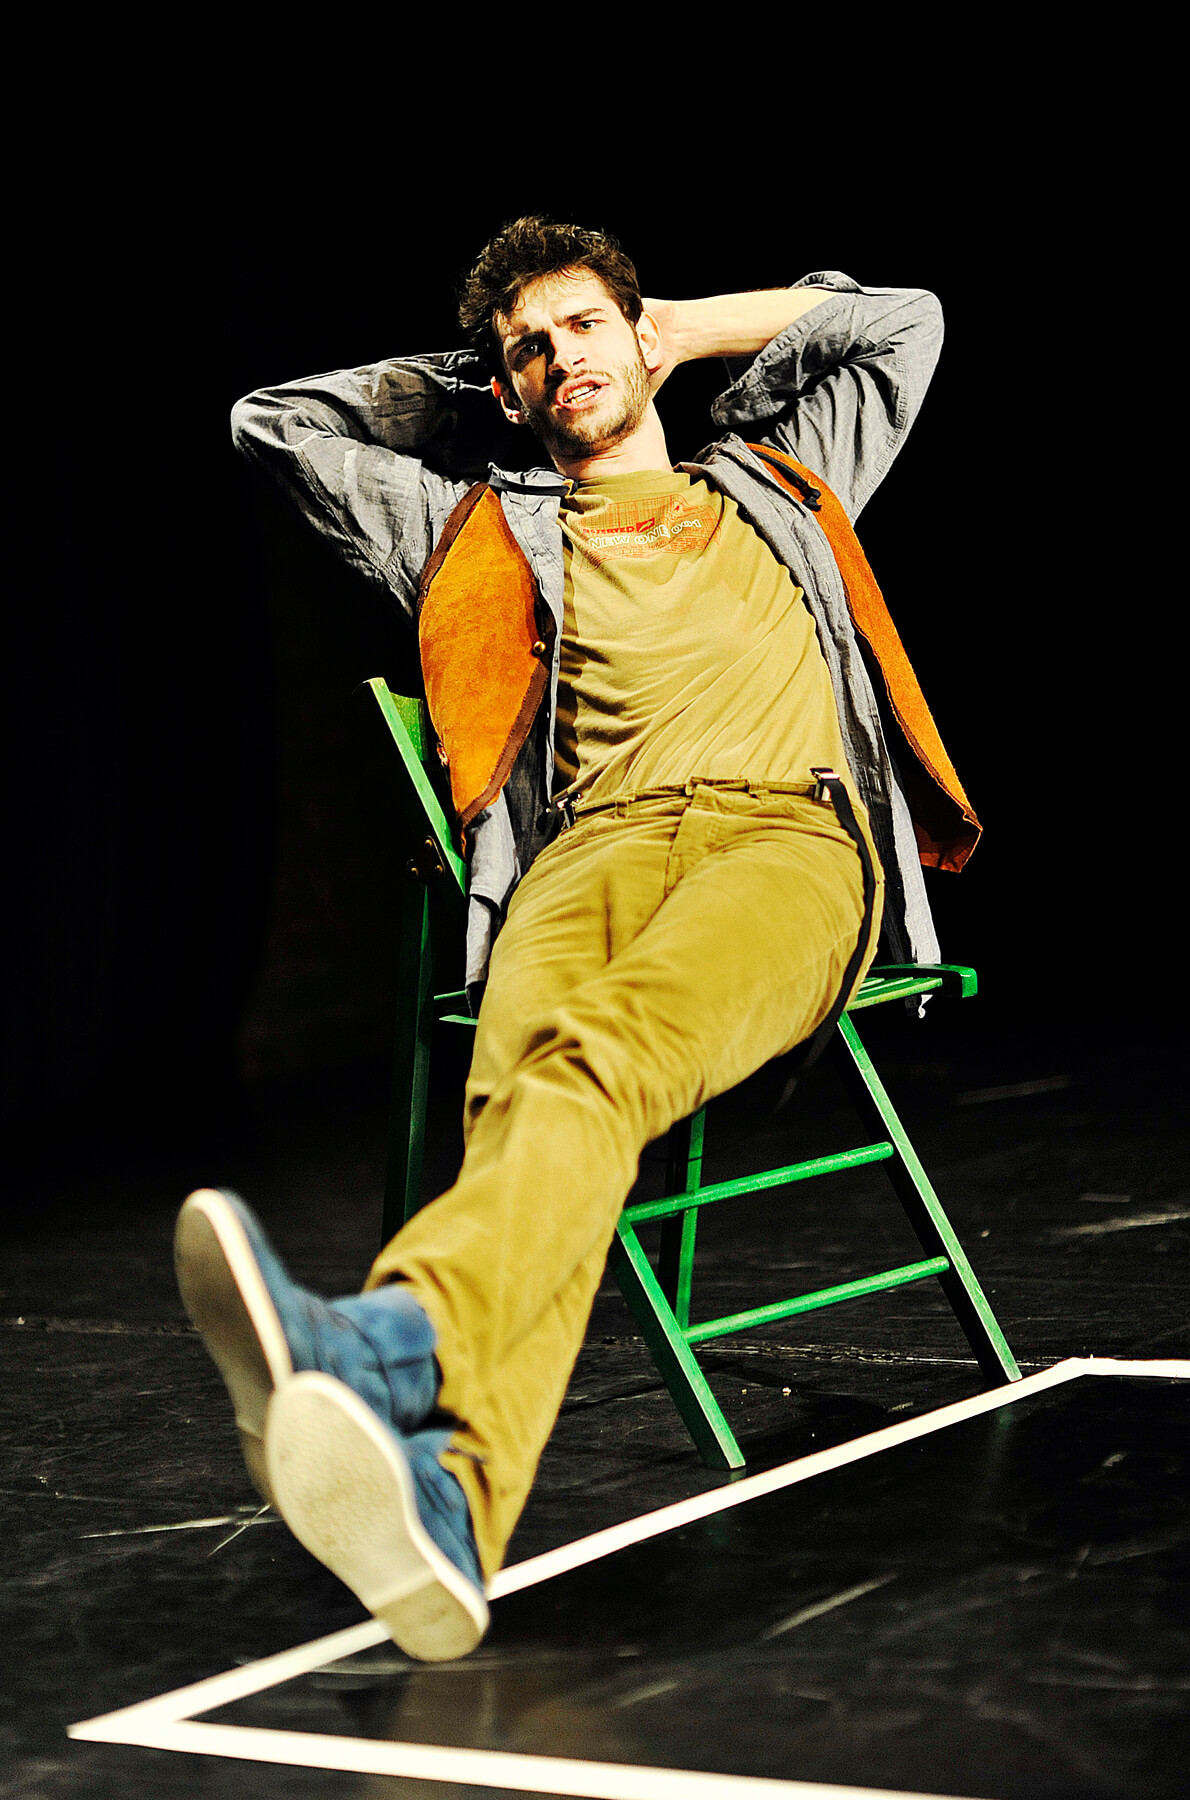 Zdjęcie do spektaklu Ścianananaświat. Aktor siedzi na zielonym krześle, z nogami wyciągnietym przed siebie i z rękami założonymi za głowę. Ubrany w niebieskie buty, zółte sztruksy, szara koszule i pomarańczową kamizelkę.